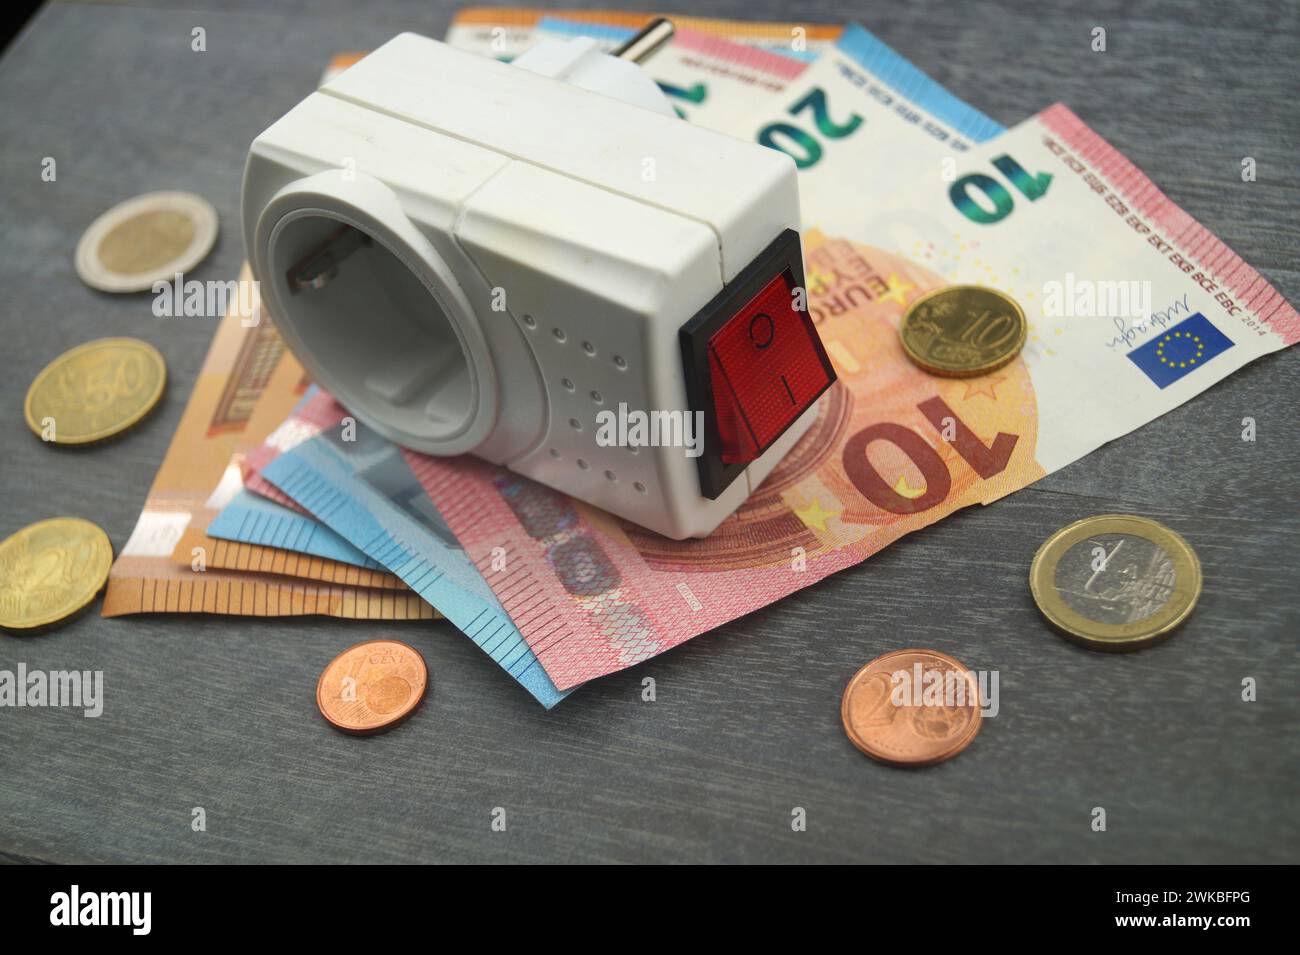 Socket et argent, image symbolique des coûts de l'électricité Banque D'Images